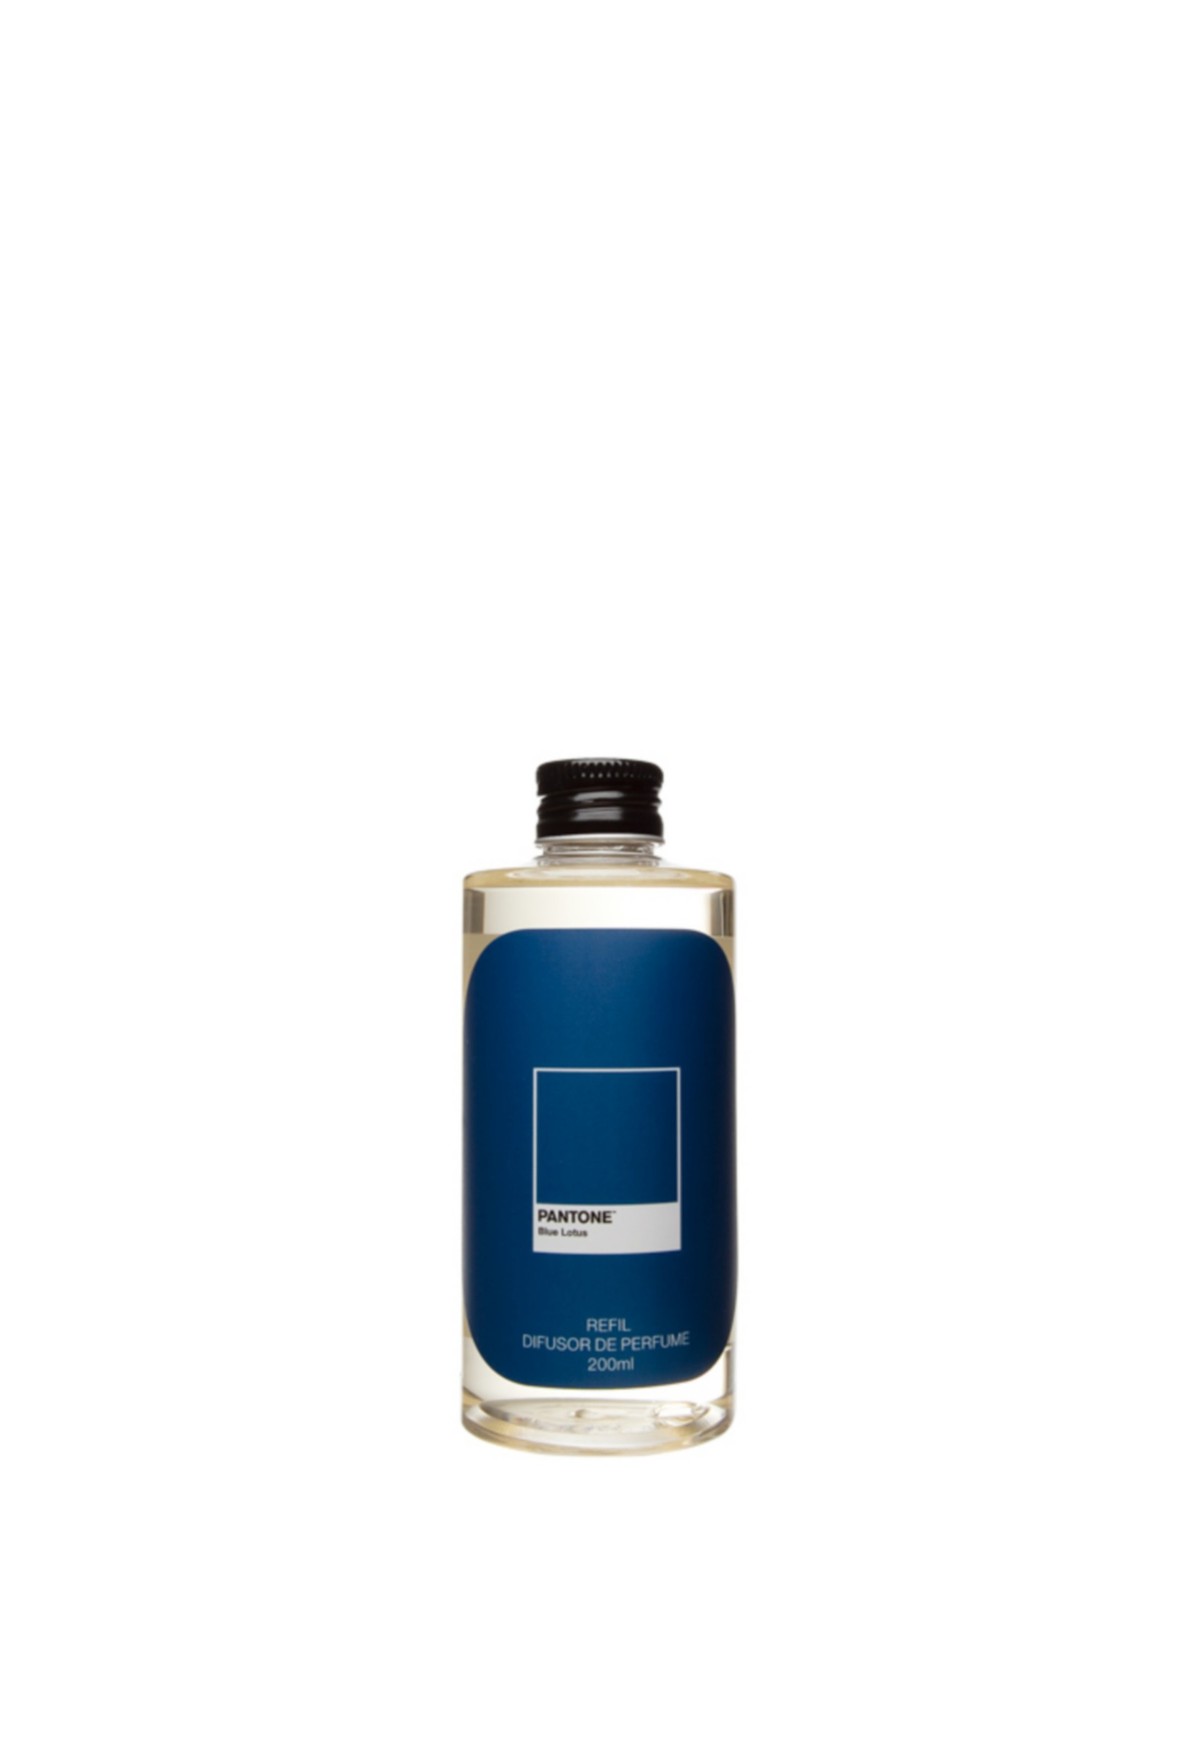 Refil Difusor de Perfume | Blue Lotus - Pantone